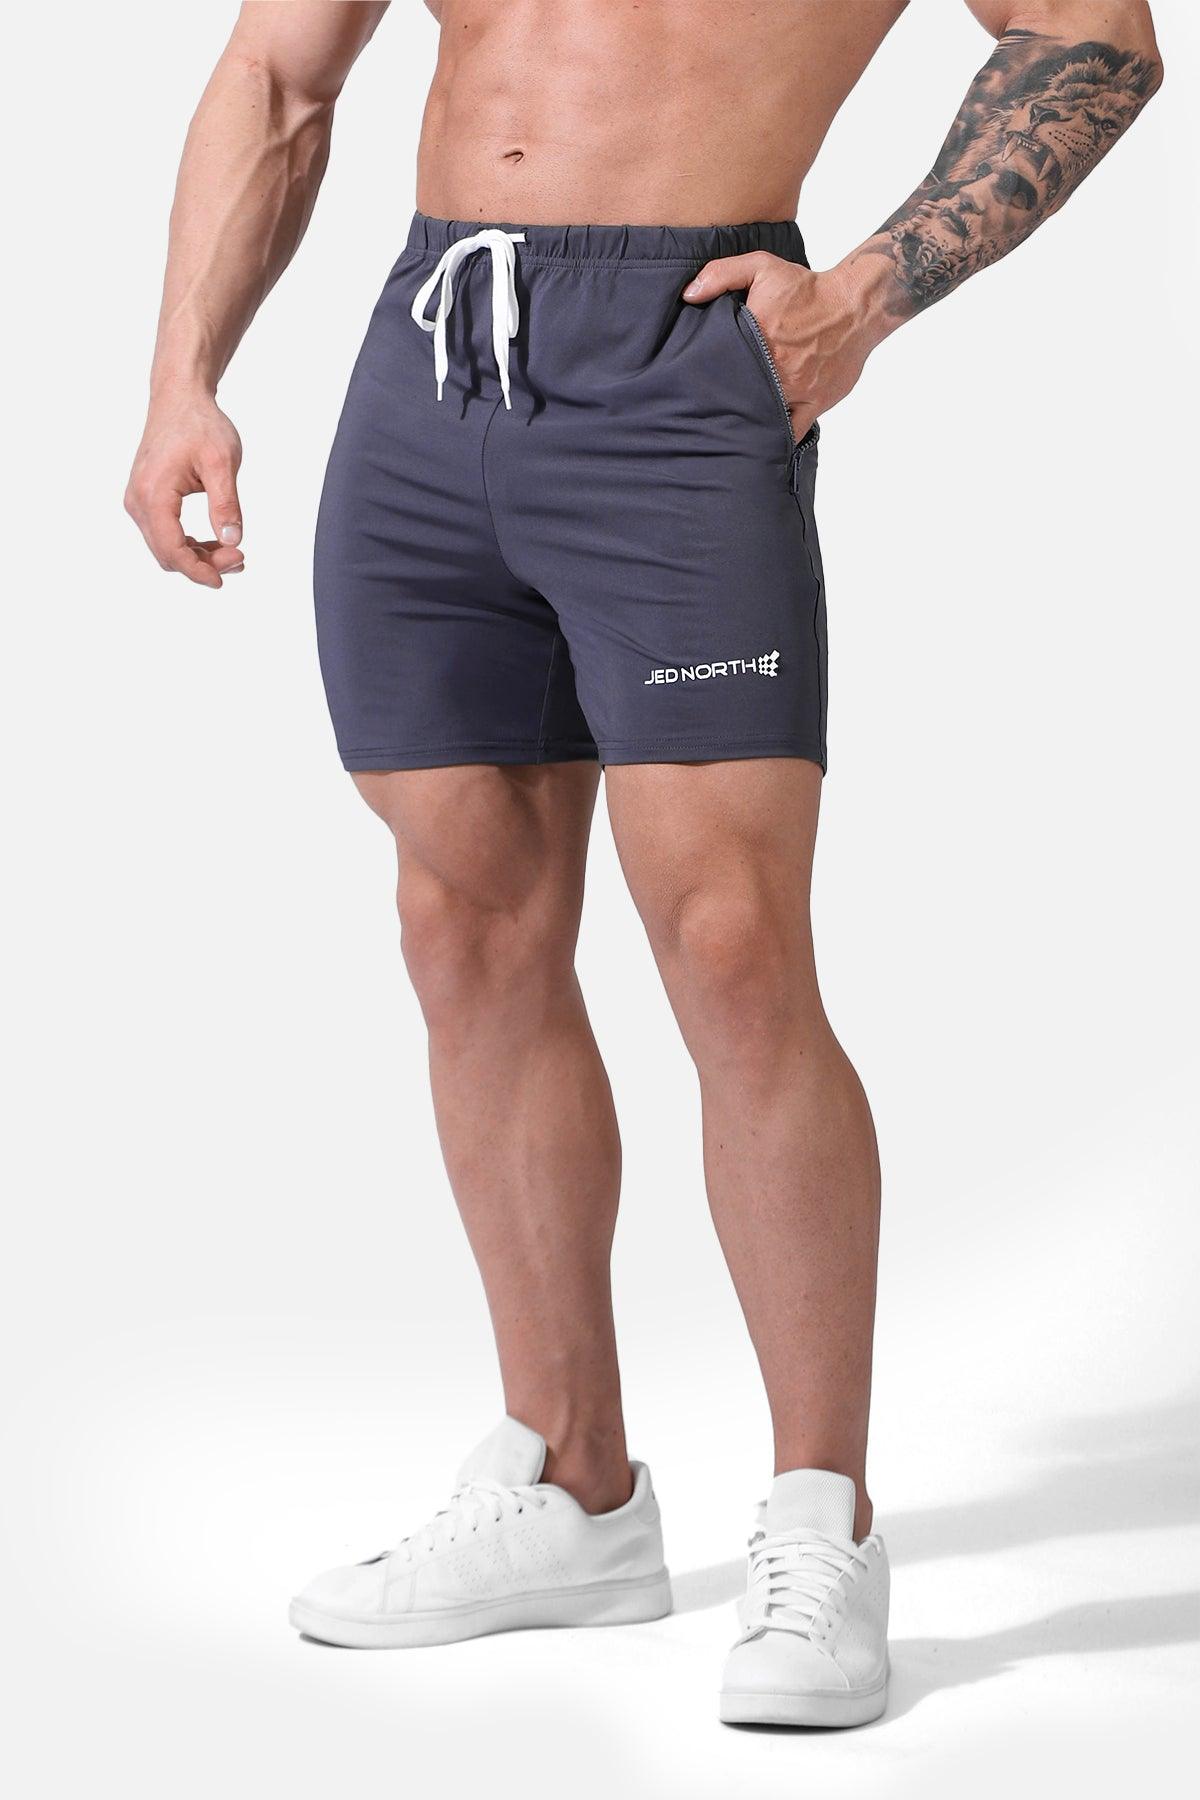 Agile Plus 5.5'' Bodybuilding Shorts w Zipper Pockets - Gray - Jed North